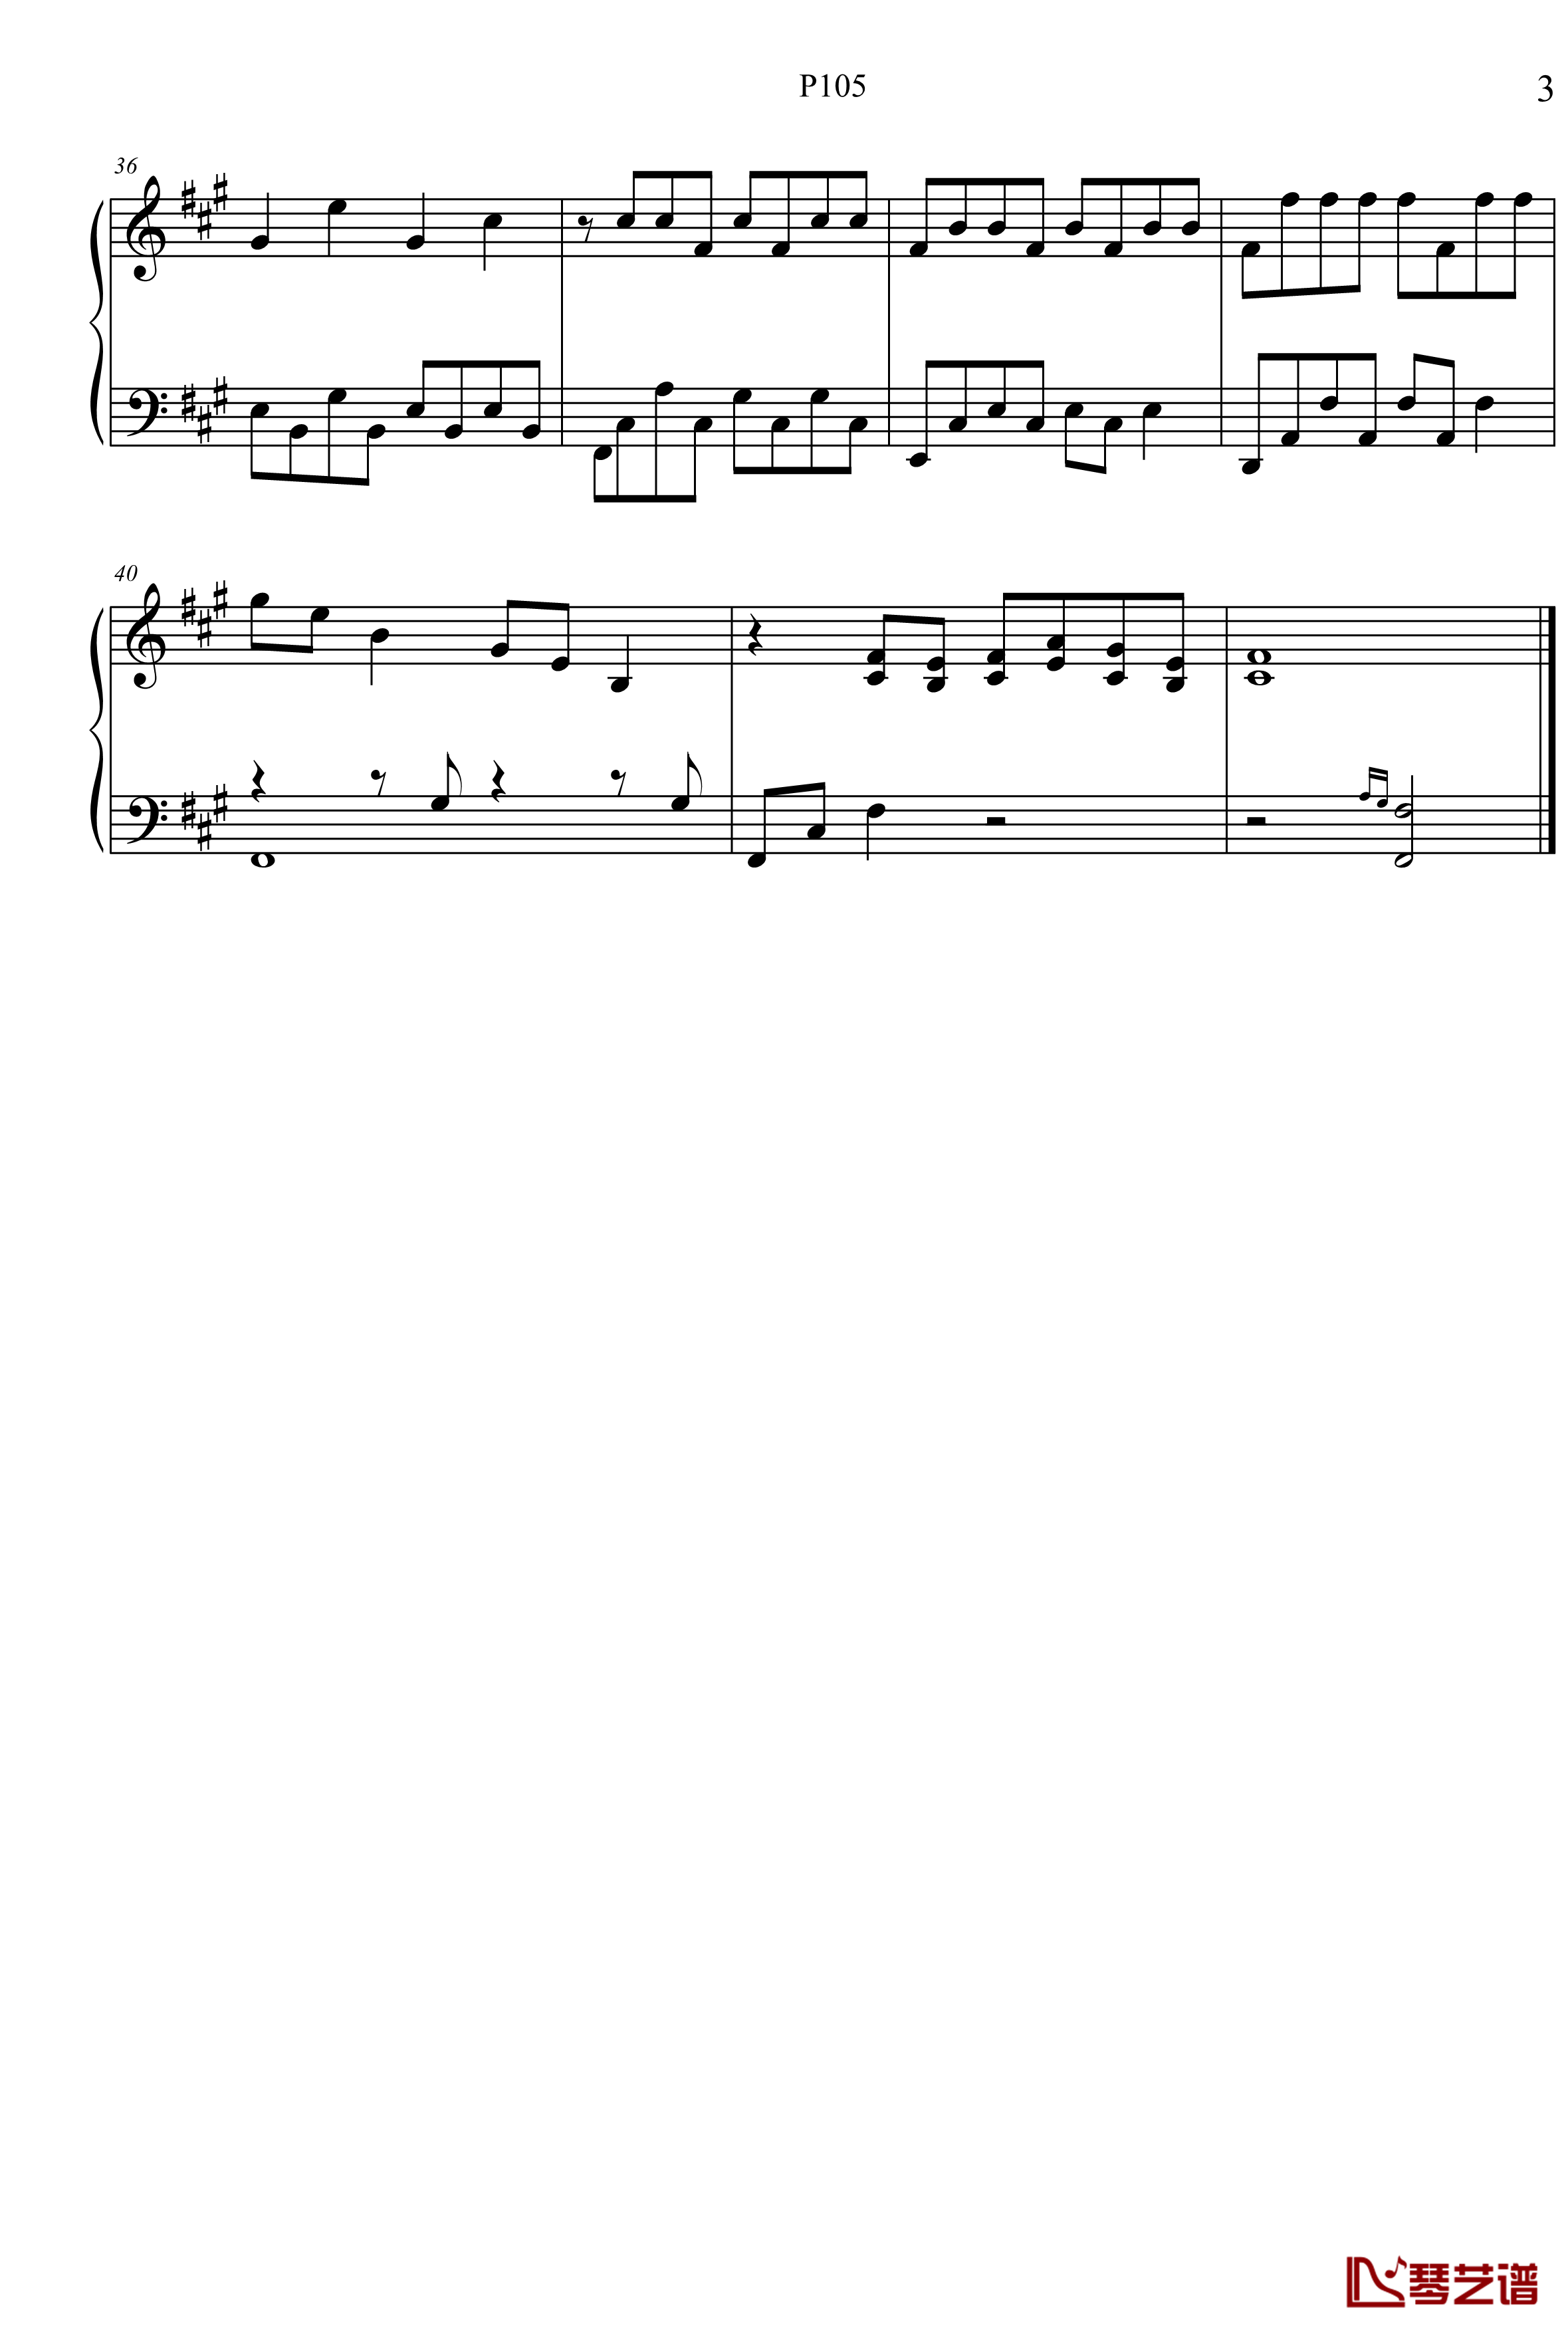 夏夷则主题曲钢琴谱-古剑奇谭二-P1053